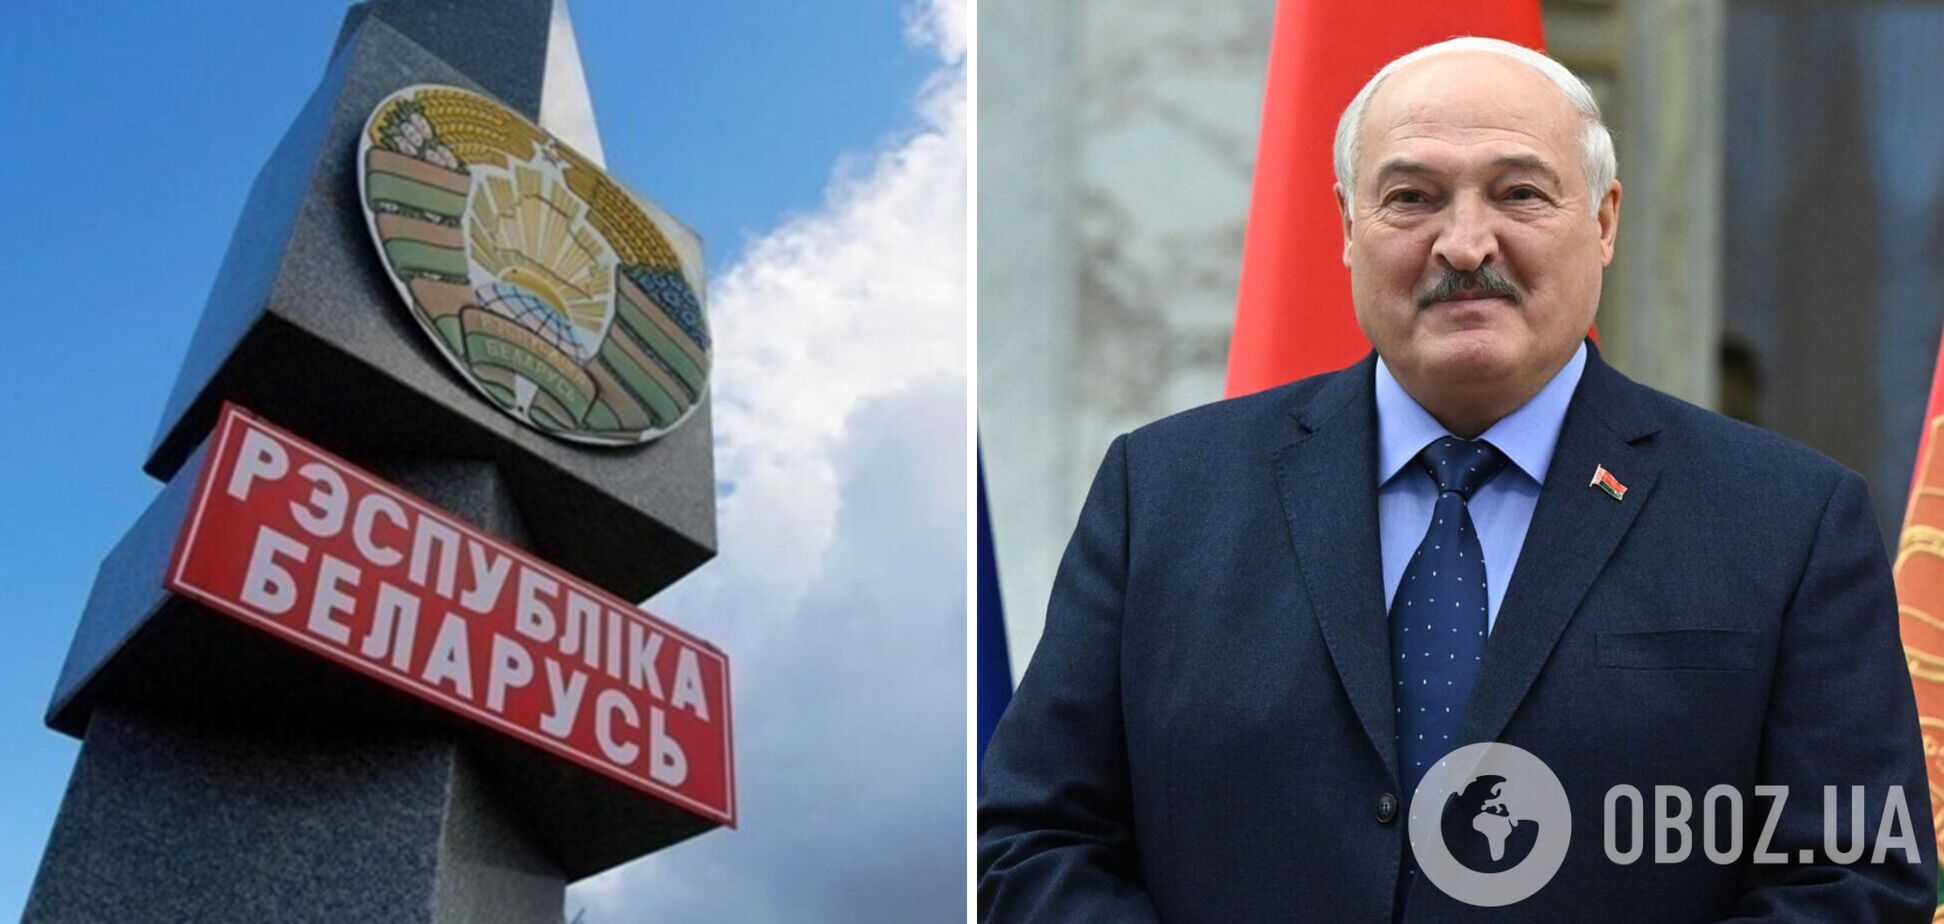 Лукашенко подписал закон о пожизненных гарантиях для себя и своей семьи: что это значит